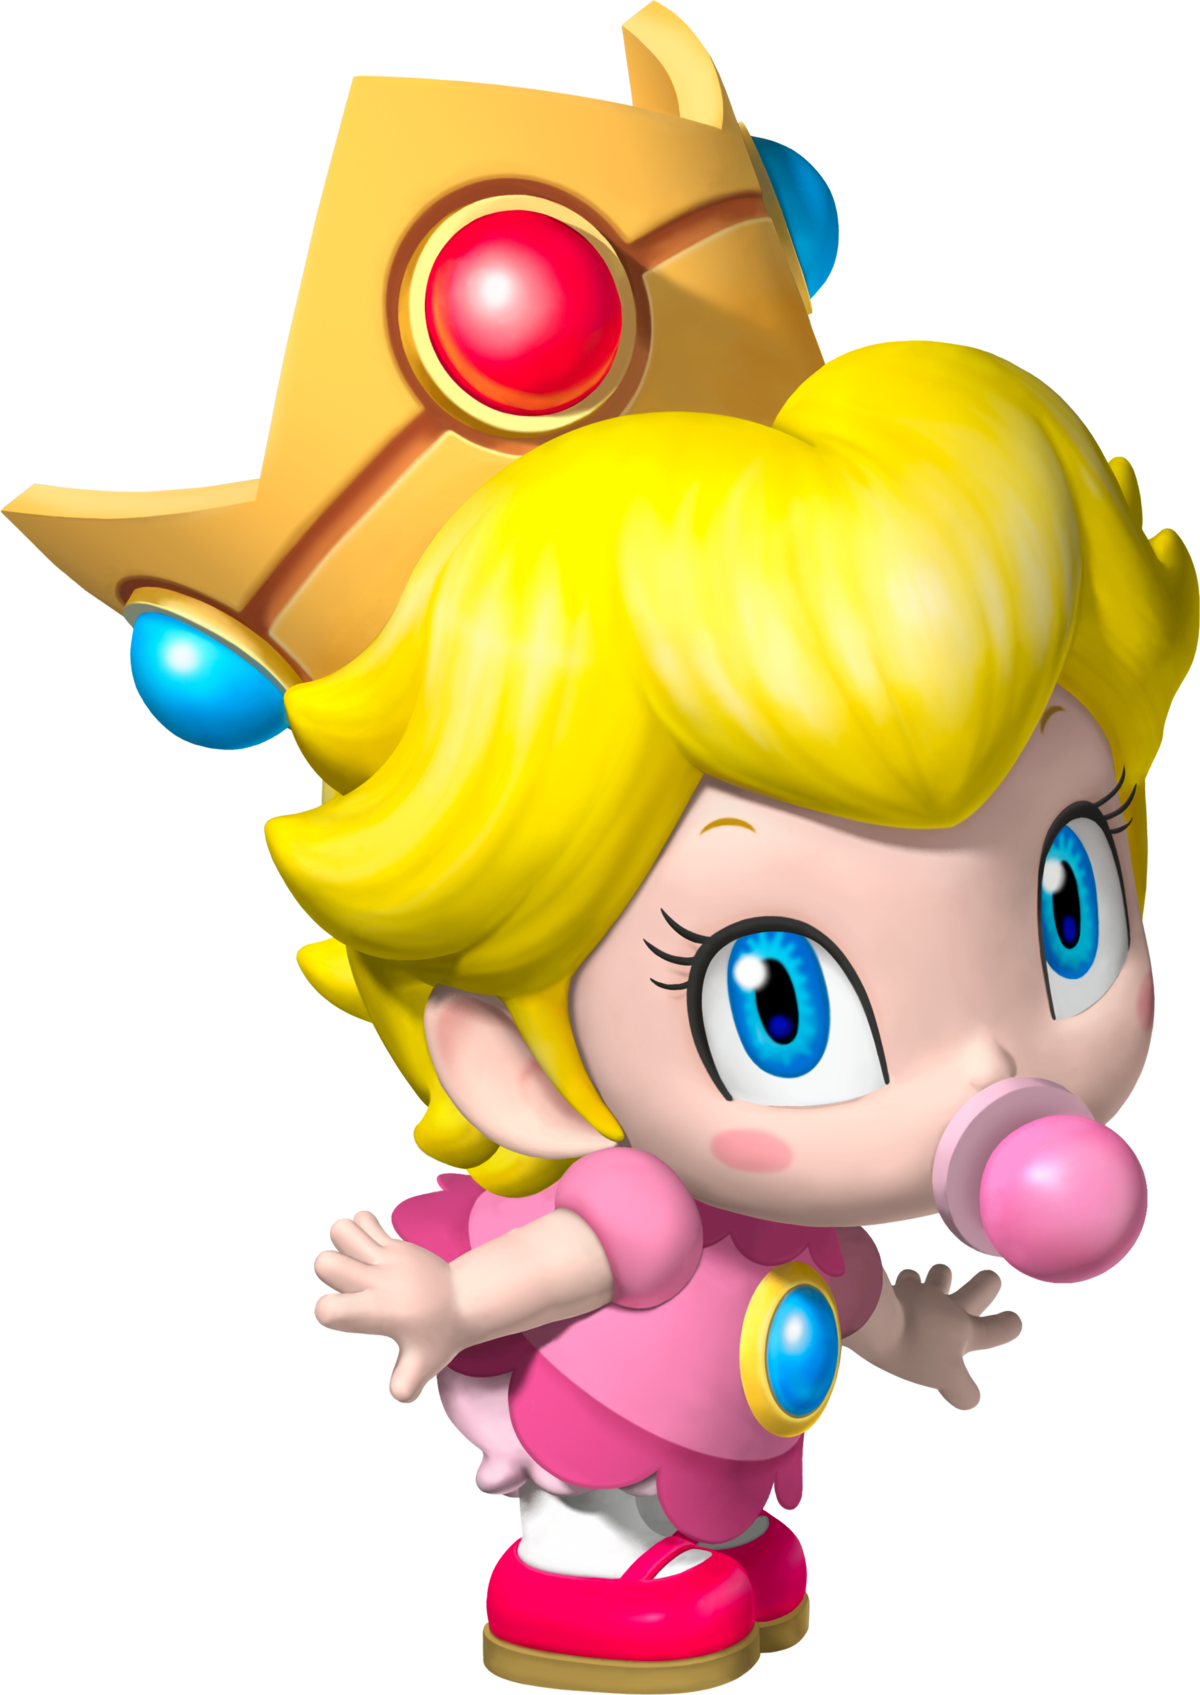 Peach Super Mario Dk – Telegraph